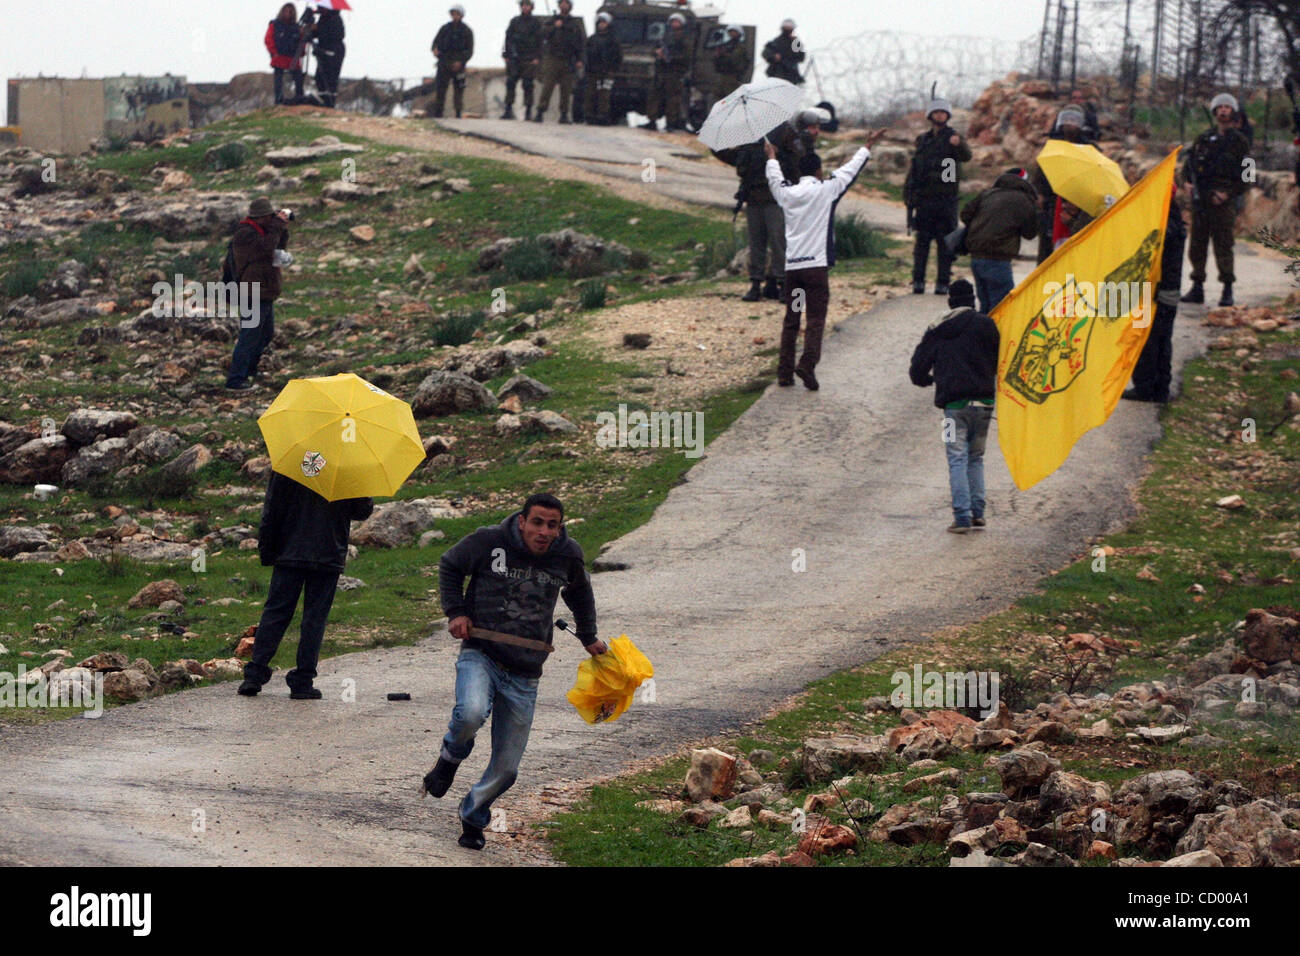 Sildiers israeliano fire le scatole metalliche del gas lacrimogeno verso i dimostranti palestinesi durante una manifestazione di protesta nel villaggio di Bilin nel Febbraio 4, 2011. Foto di Issam Rimawi Foto Stock